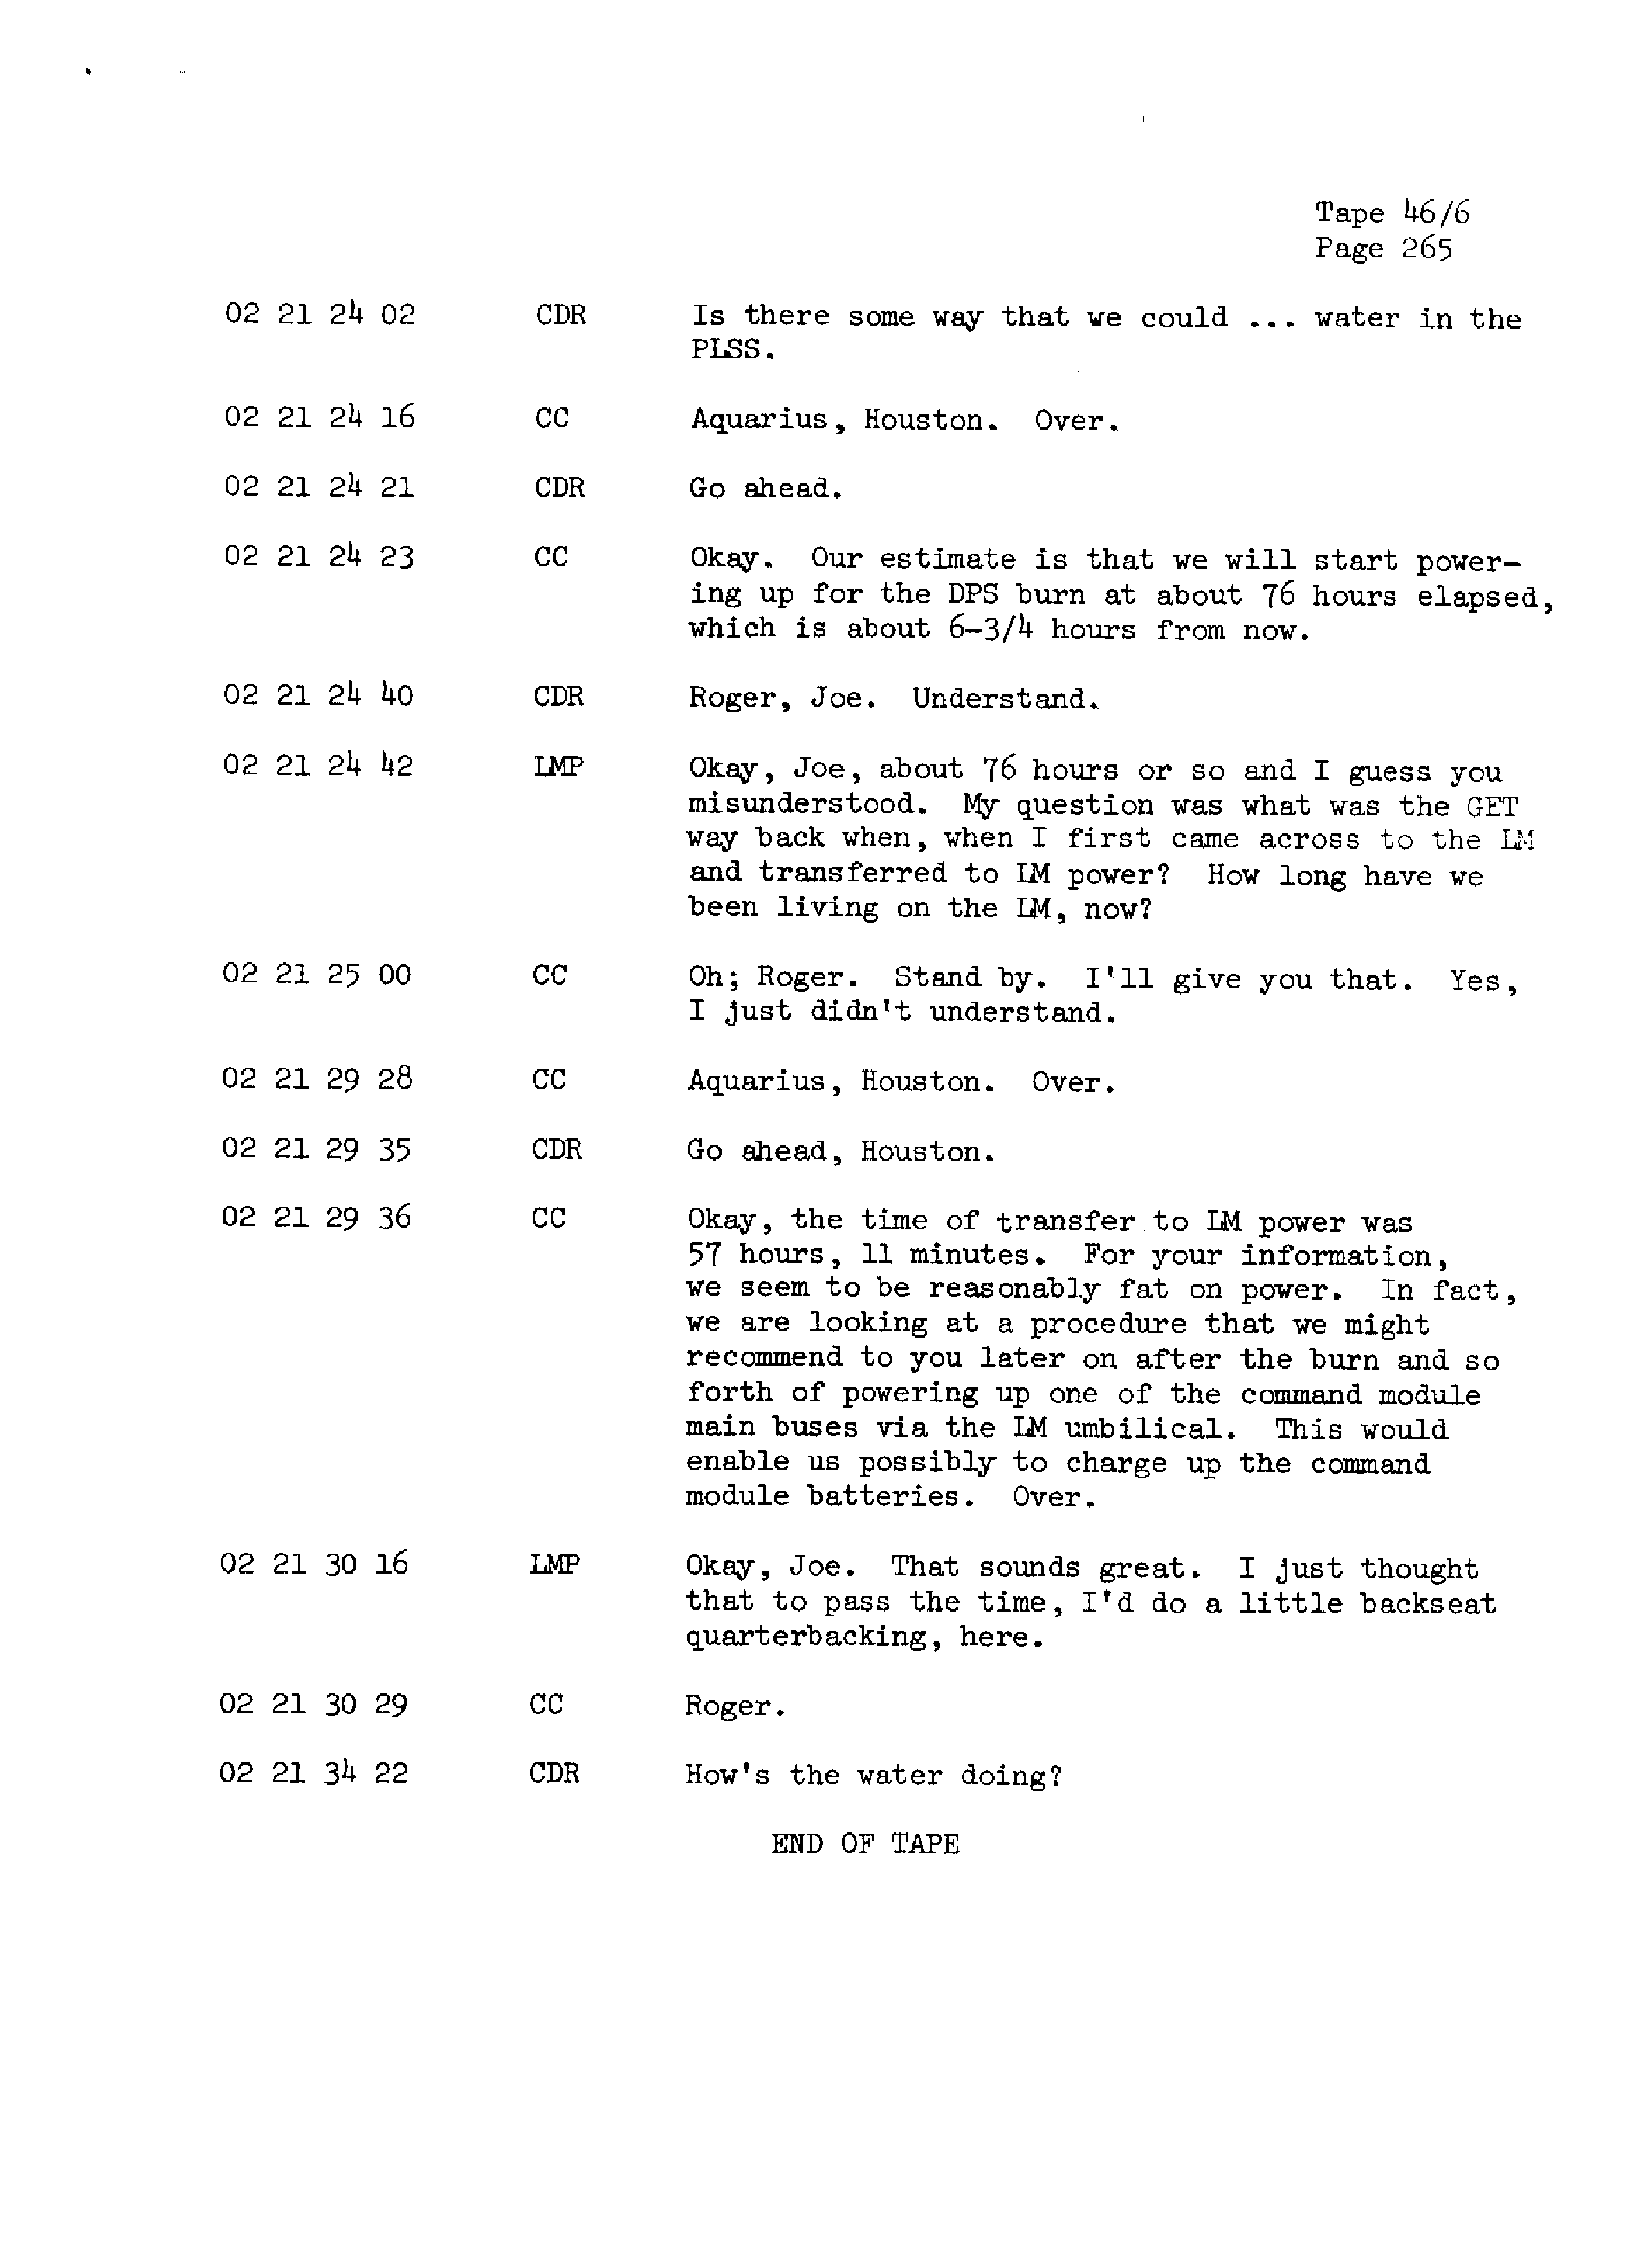 Page 272 of Apollo 13’s original transcript